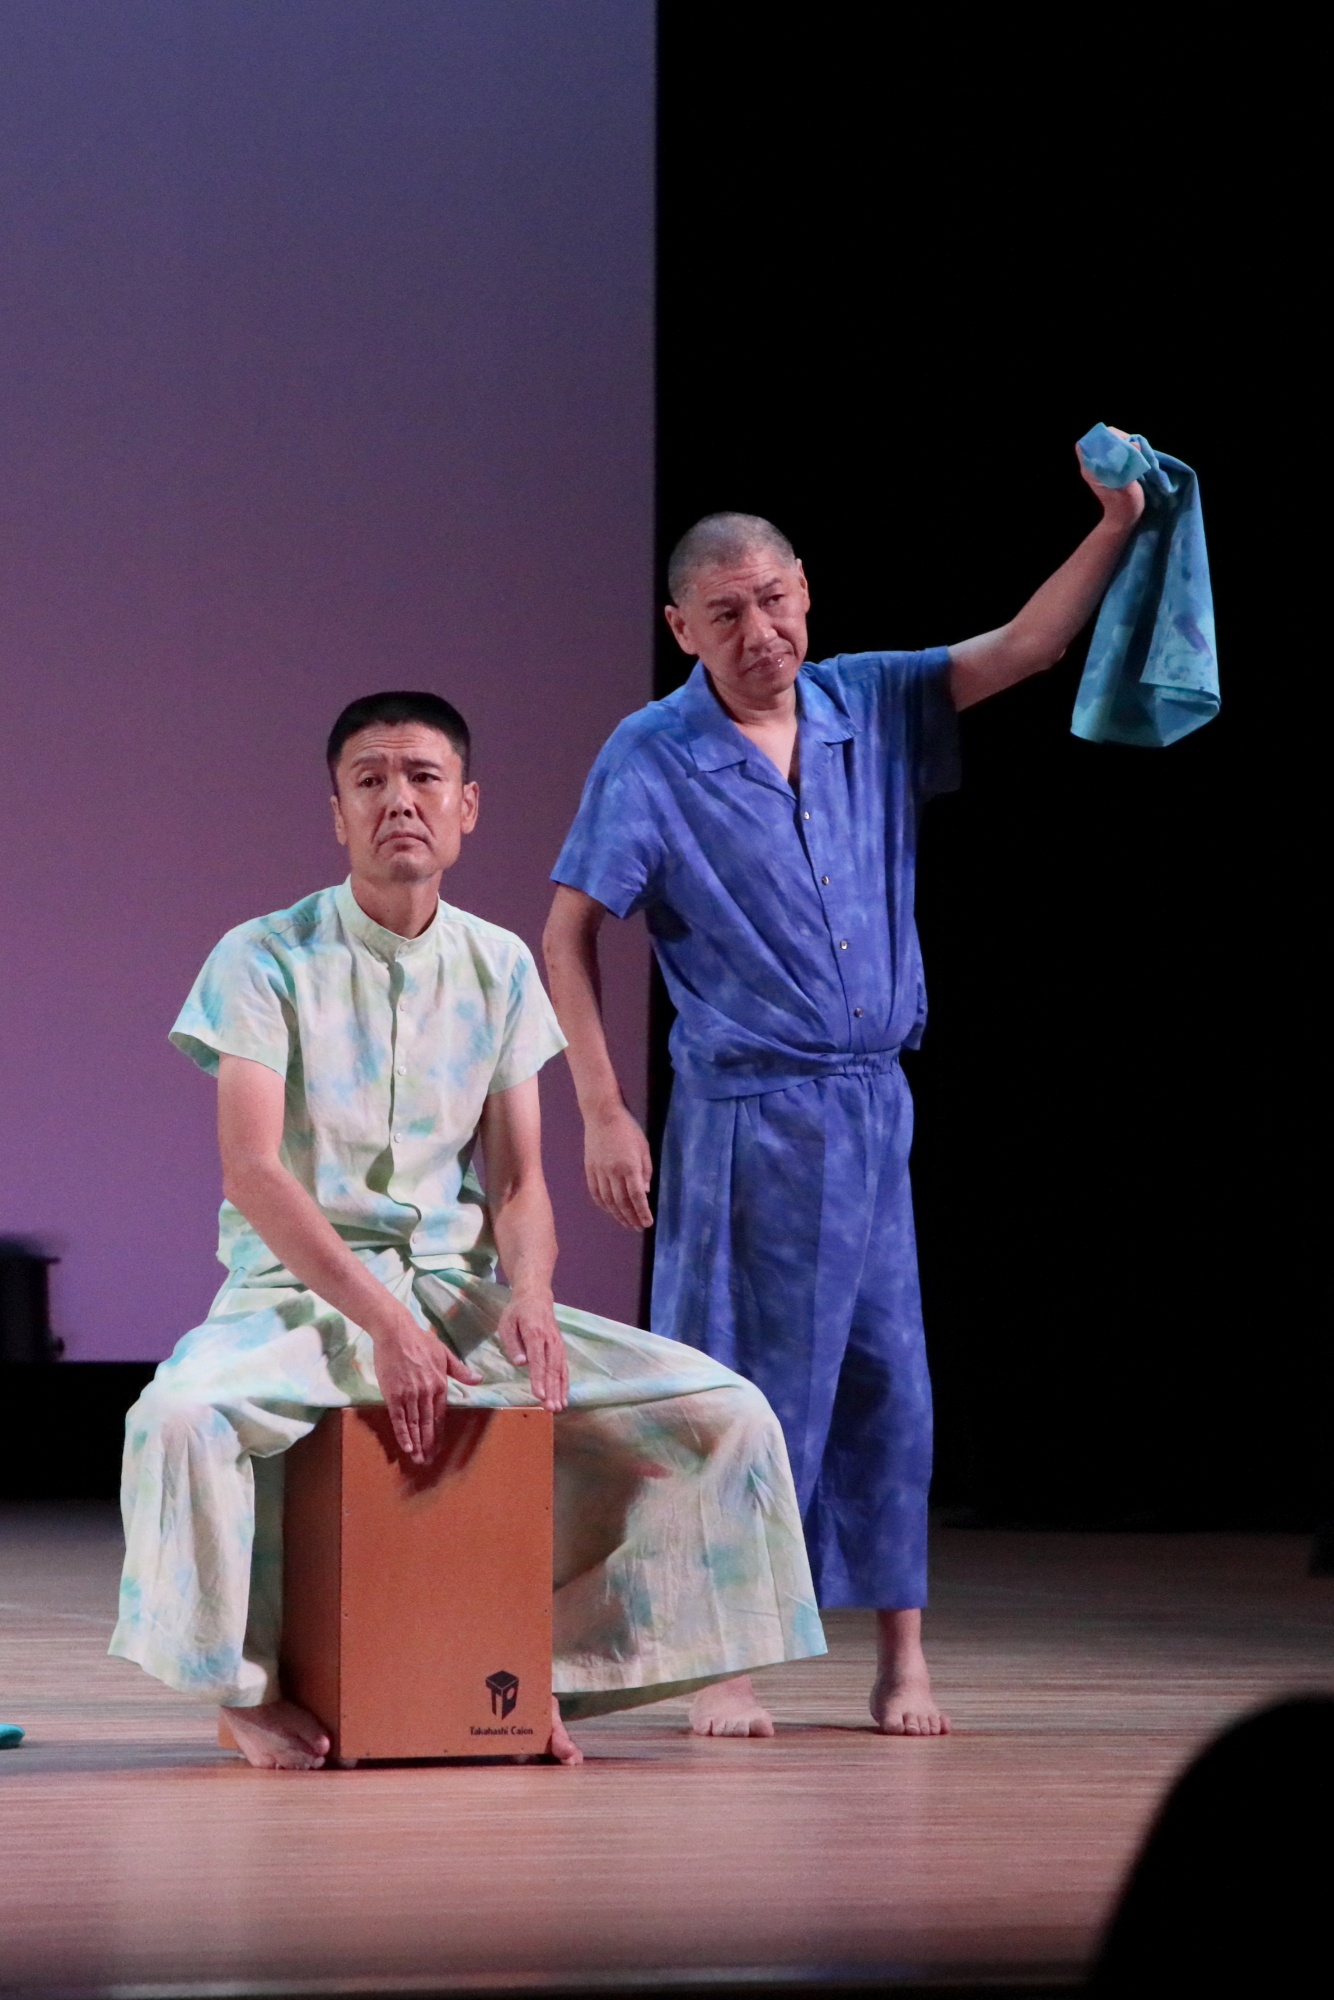 スポットライトが当たった舞台の上で、箱に跨ったり青い絞り染めの布を持ち上げている2人の男性の写真